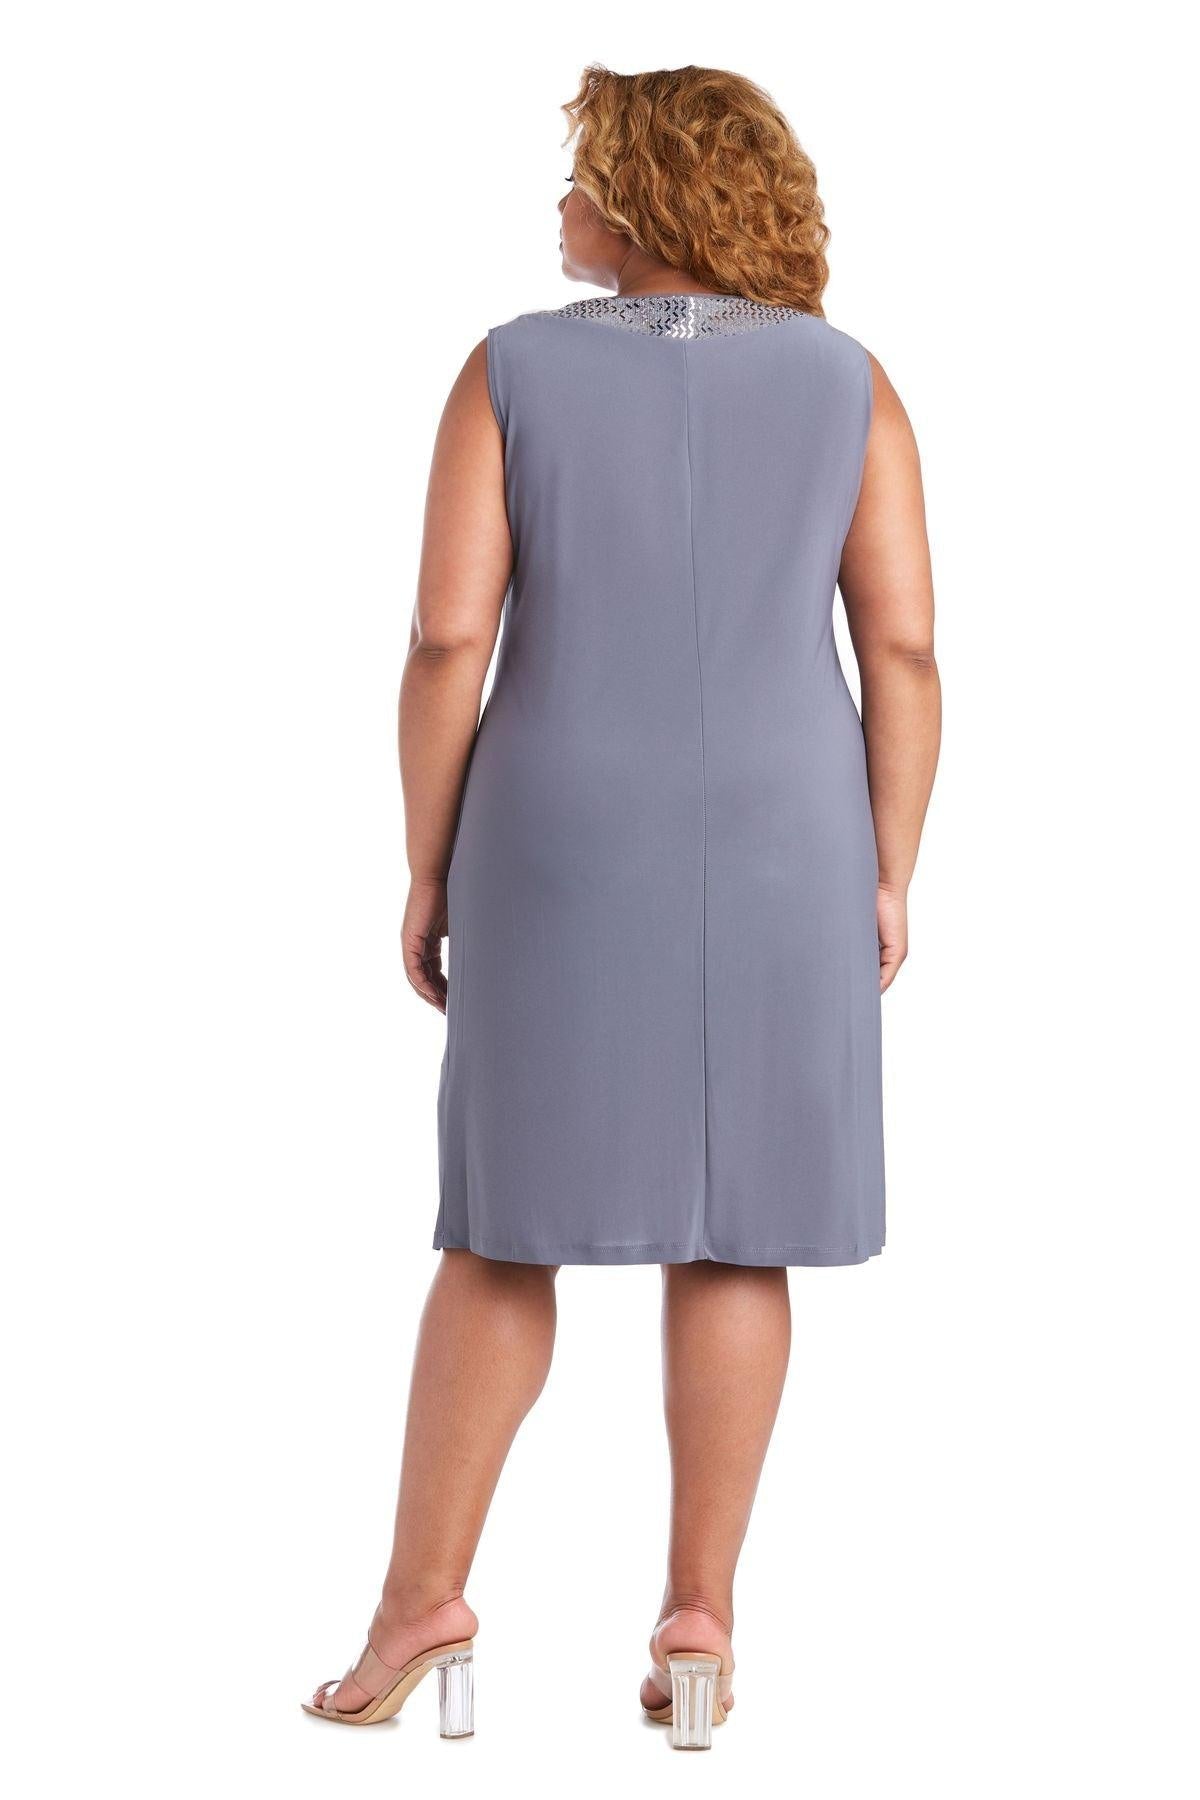 R&M Richards Short Plus Size Jacket Dress 5327W - The Dress Outlet